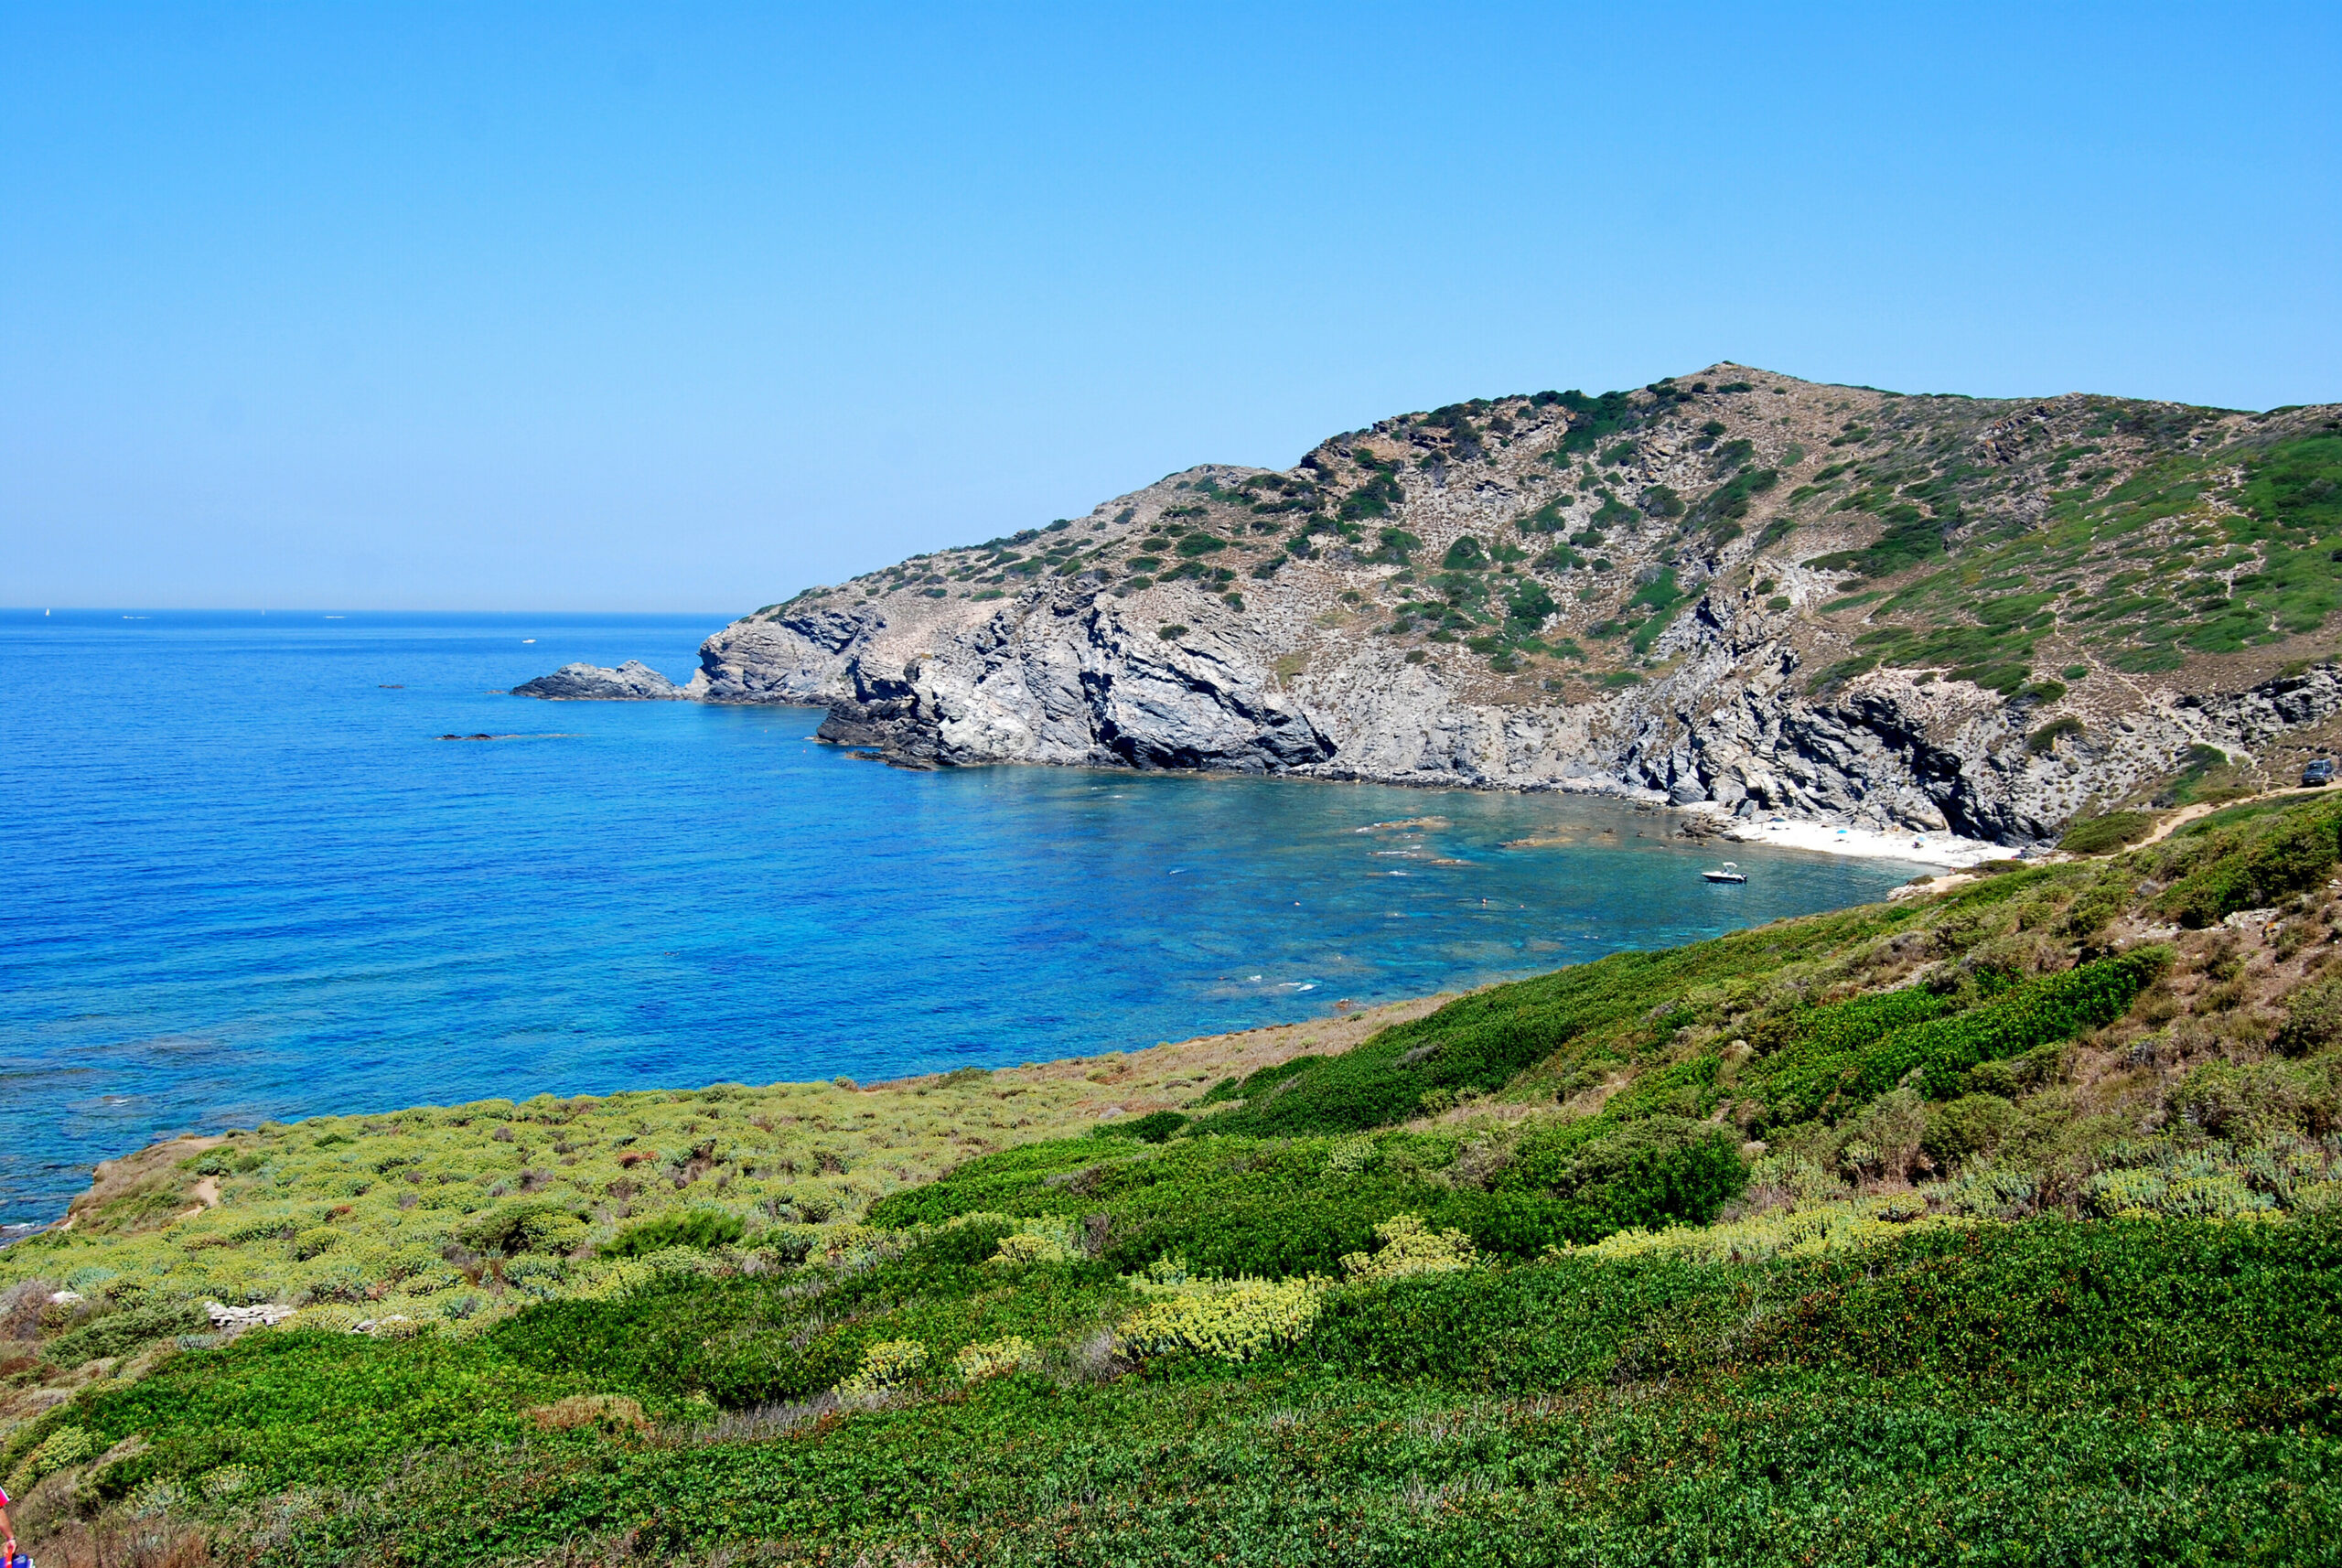 Der Strand von Lampianu auf Sardinien. Steine als Souvenir zu sammeln ist hier streng verboten. (Symbolbild)